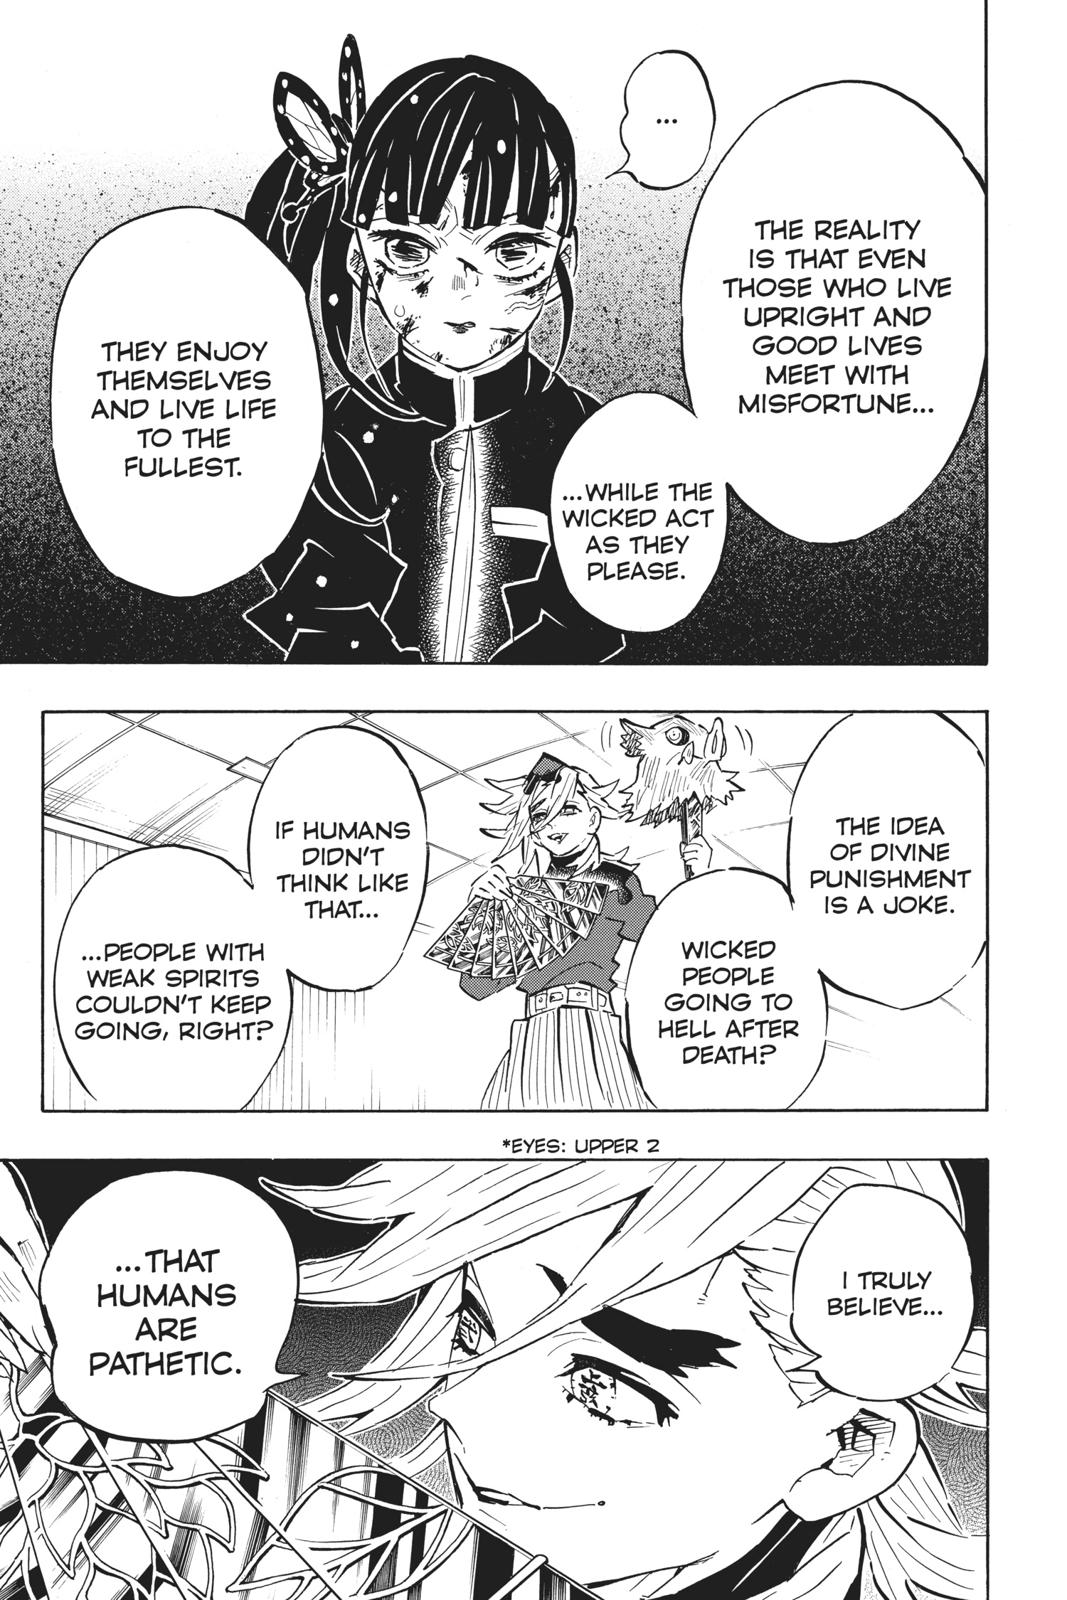 Demon Slayer Manga Manga Chapter - 161 - image 6